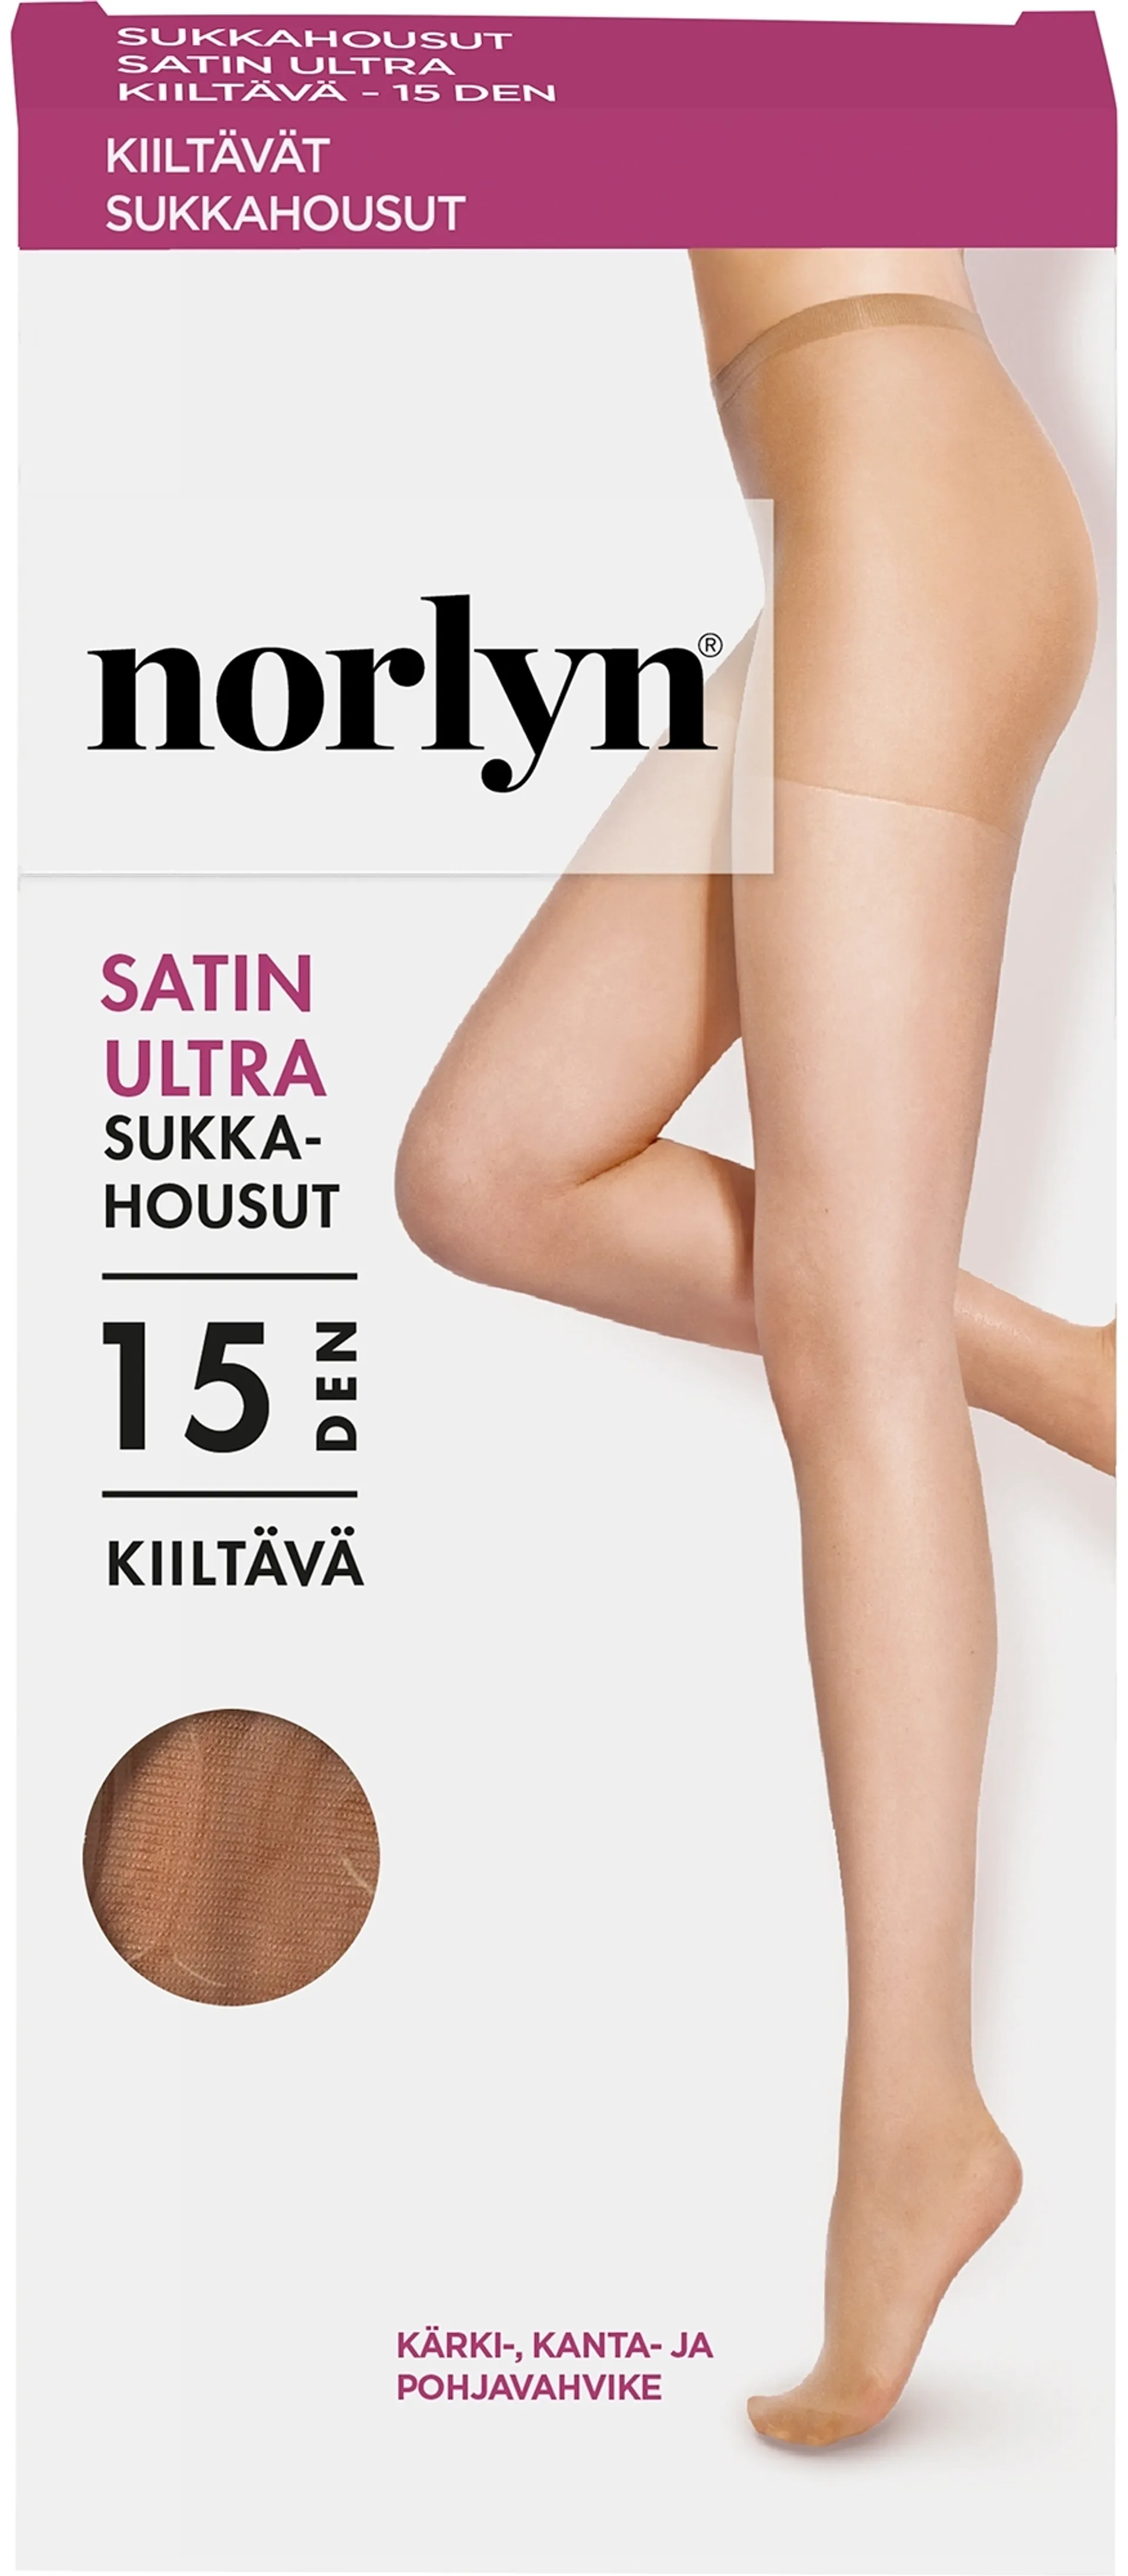 Norlyn naisten sukkahousut Satin Ultra 15den - Ivory